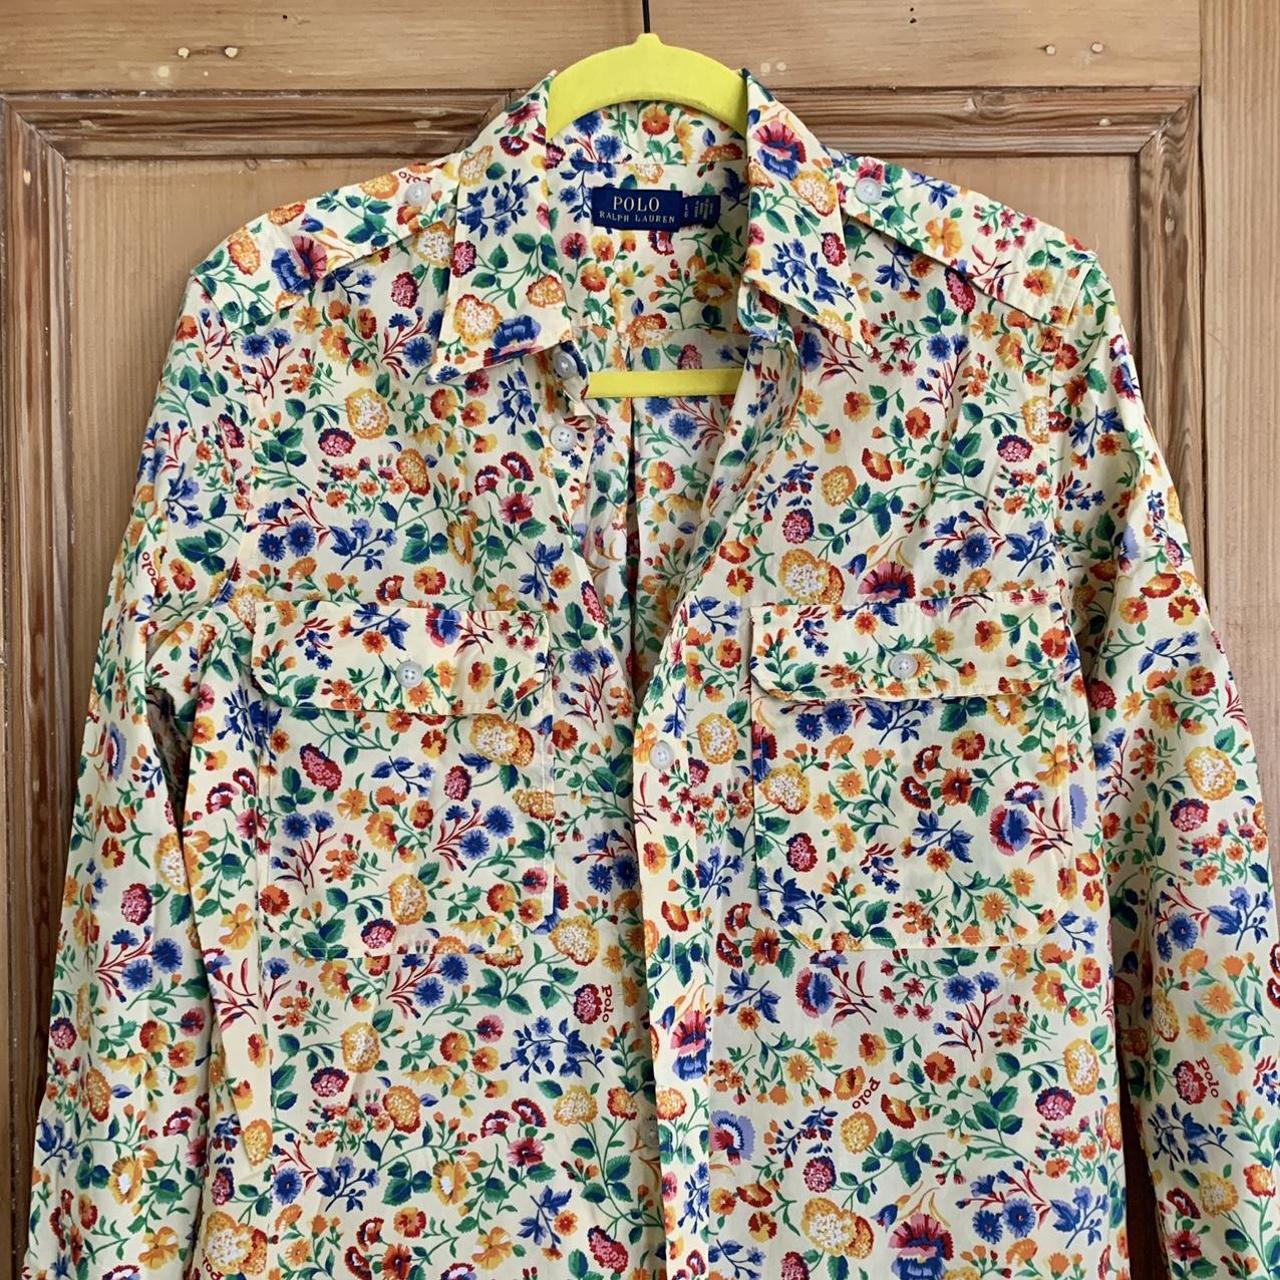 POLO Ralph Lauren floral cotton shirt Utility... - Depop